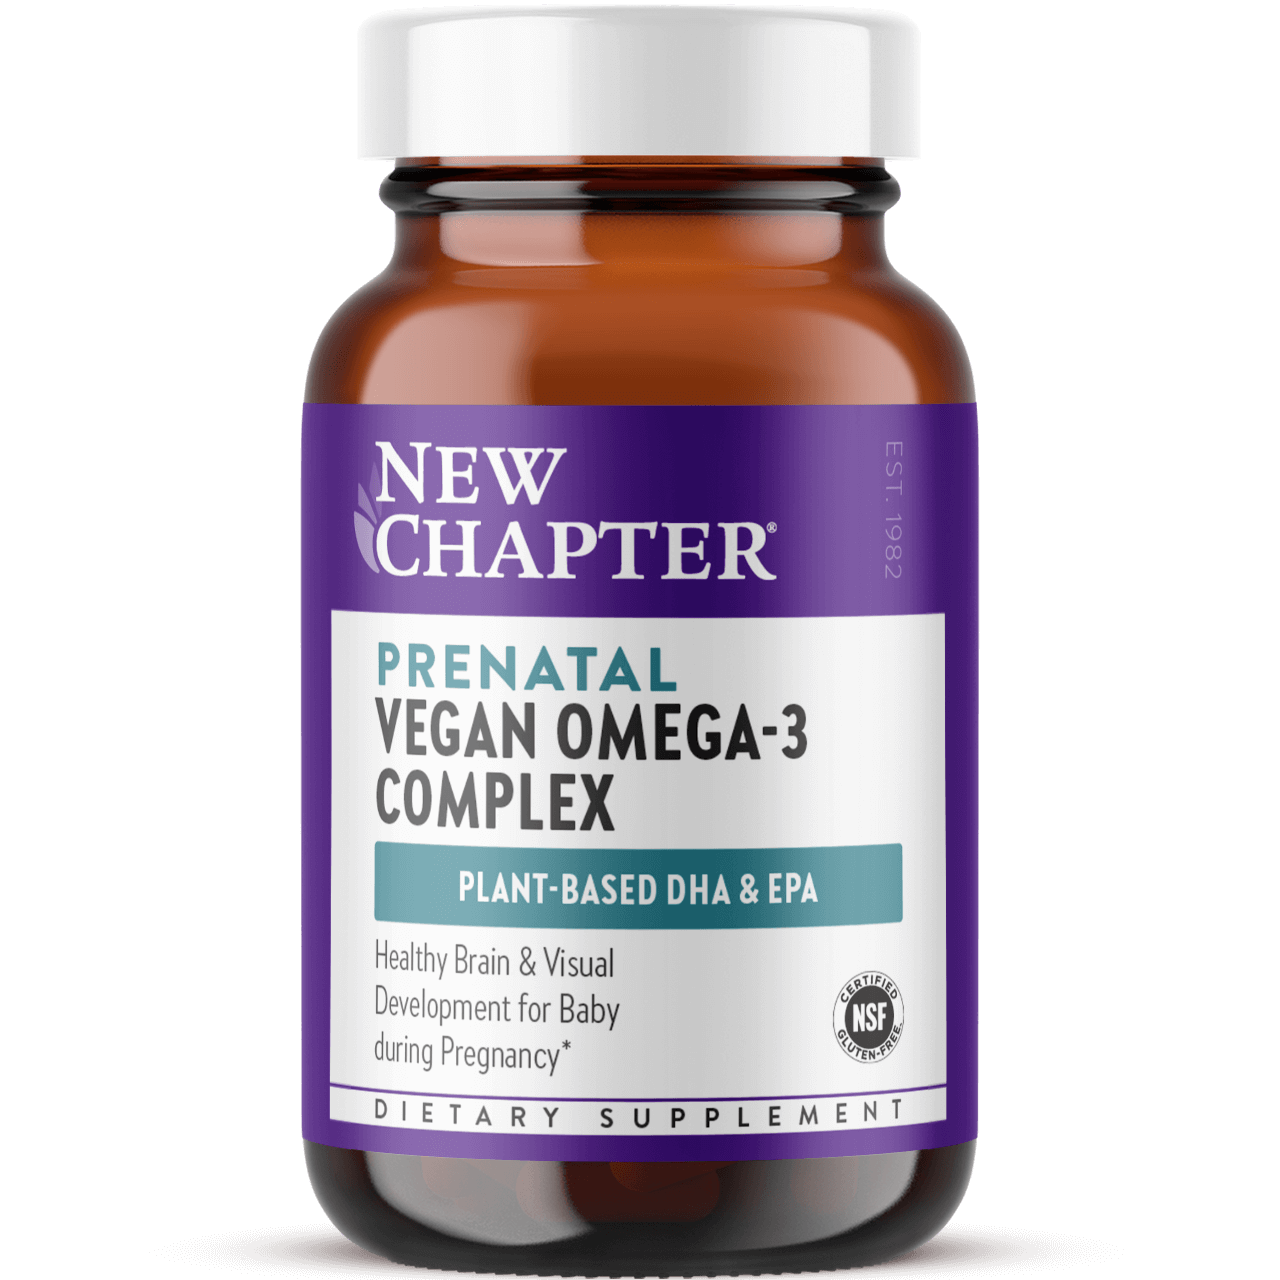 Prenatal Vegan Omega-3 Complex